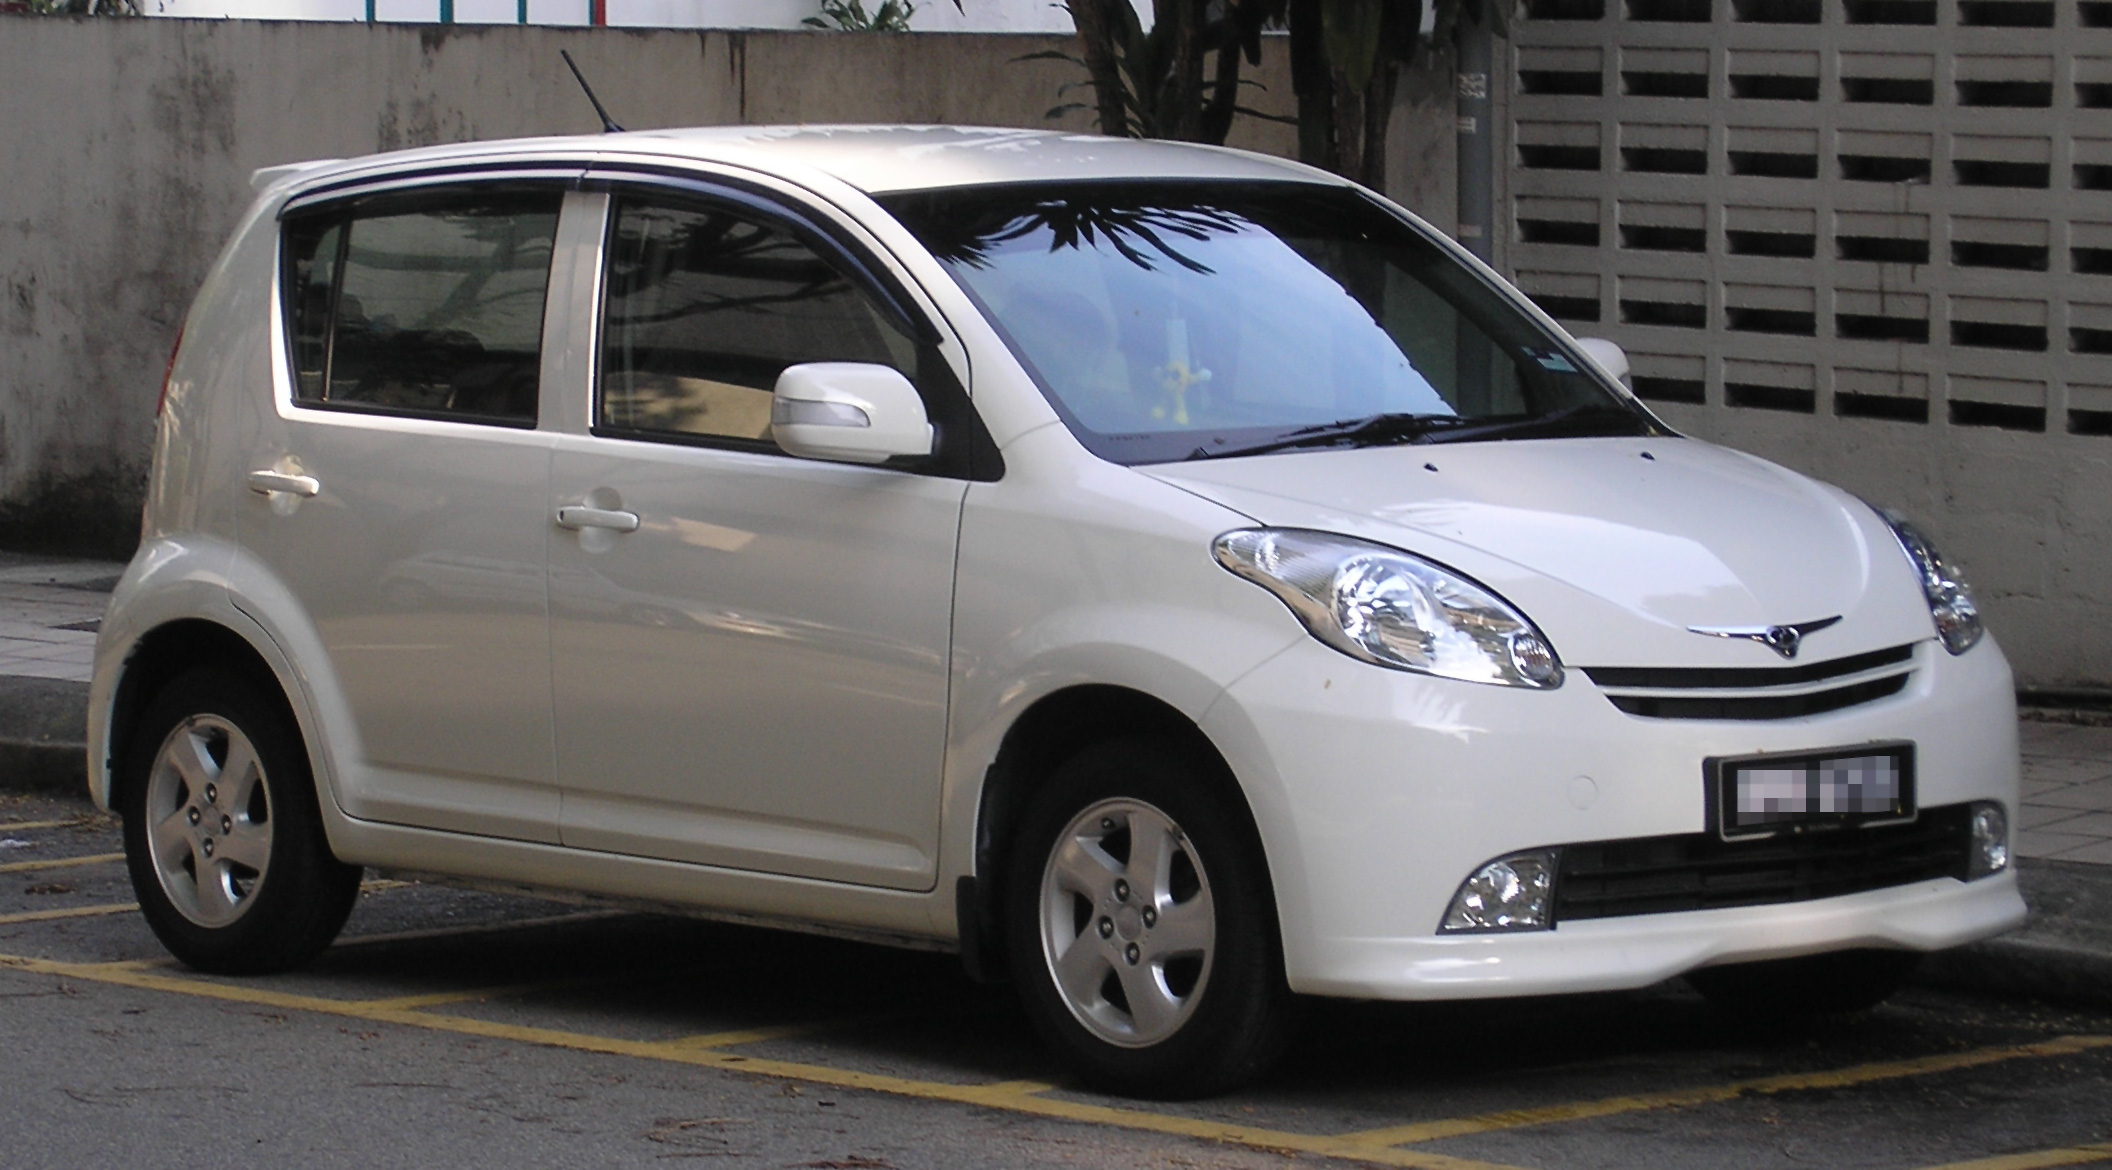 File:Perodua MyVi (front), Kuala Lumpur.jpg - Wikimedia Commons